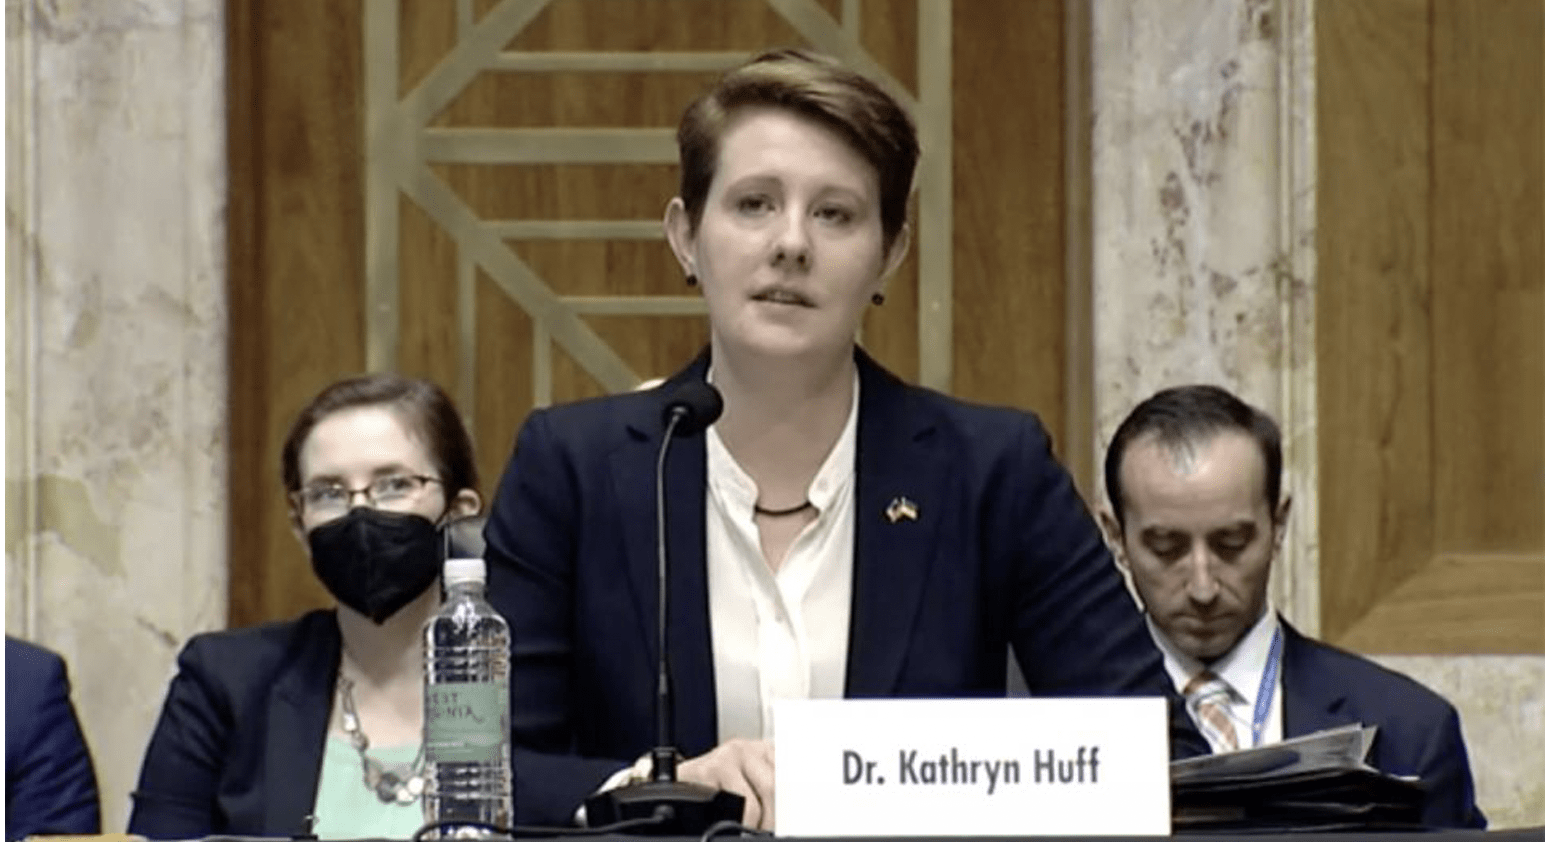 Dr. Kathryn Huff